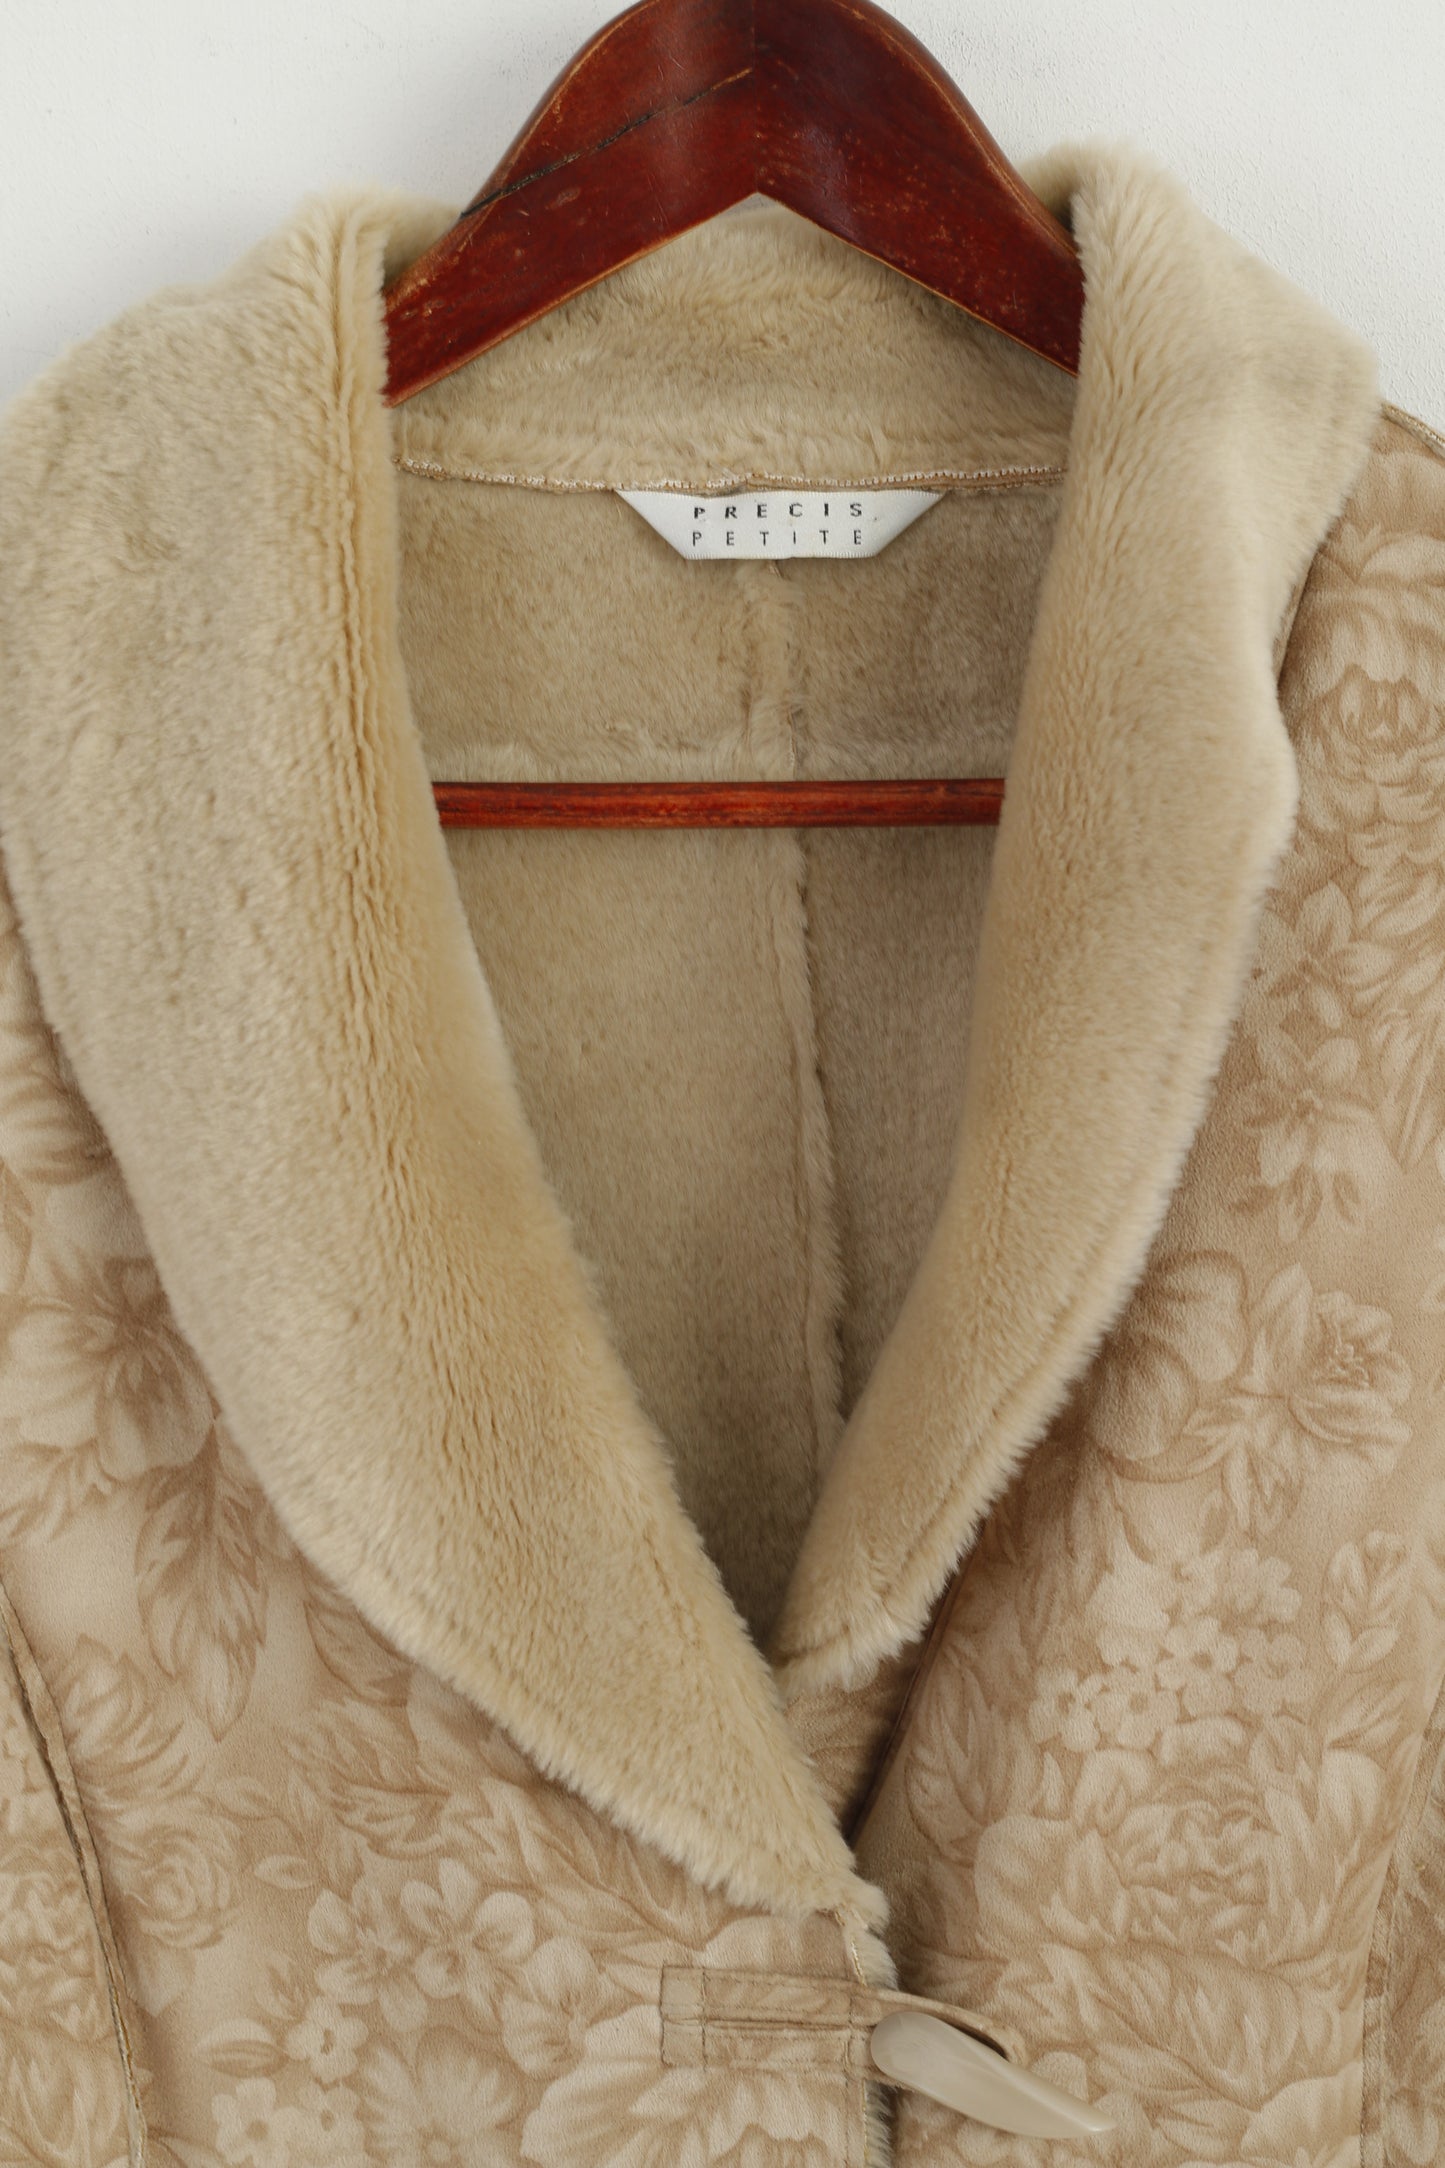 Precis Petite Women 12 38 M Waistcoat Beige Duffle Soft Floral Print Vest Boho Top